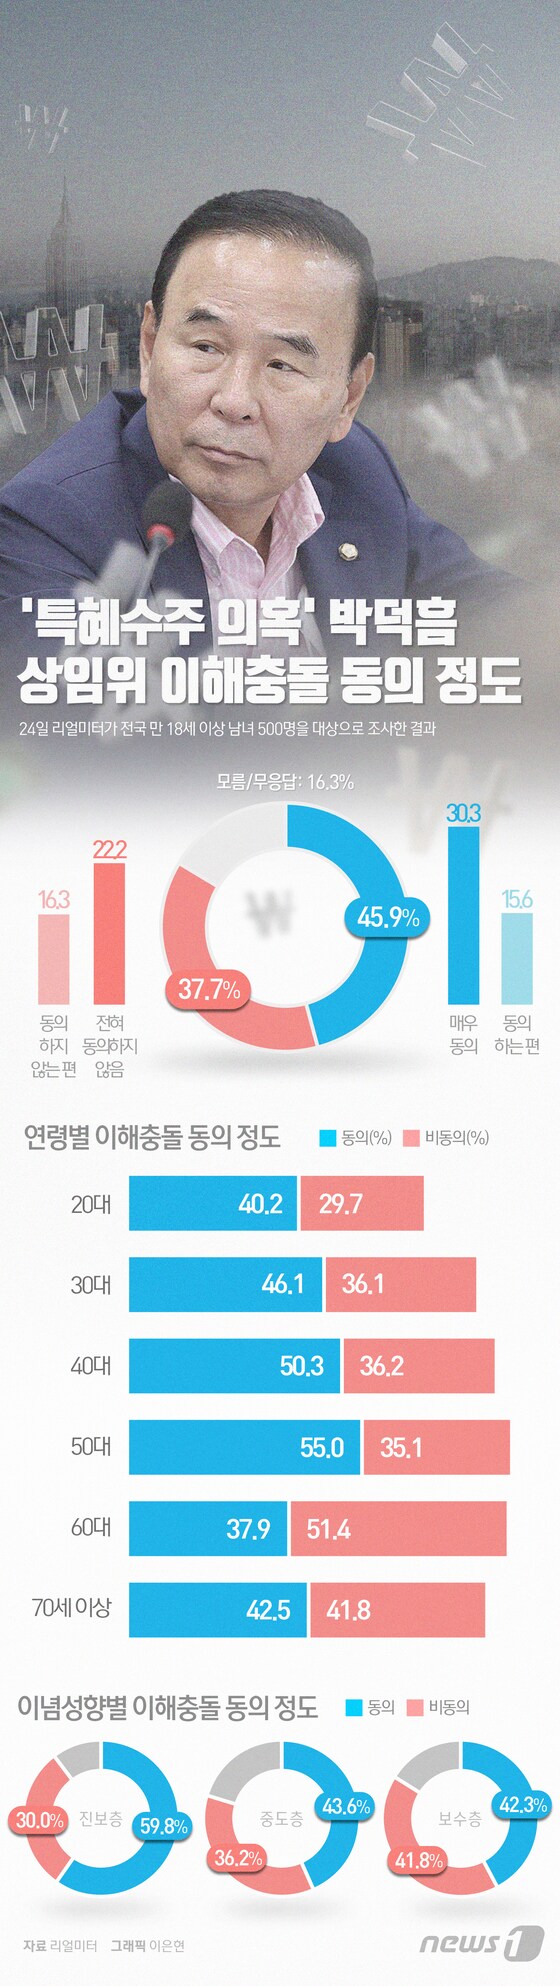 [그래픽뉴스] '특혜수주 의혹' 박덕흠 상임위 이해충돌 동의 정도